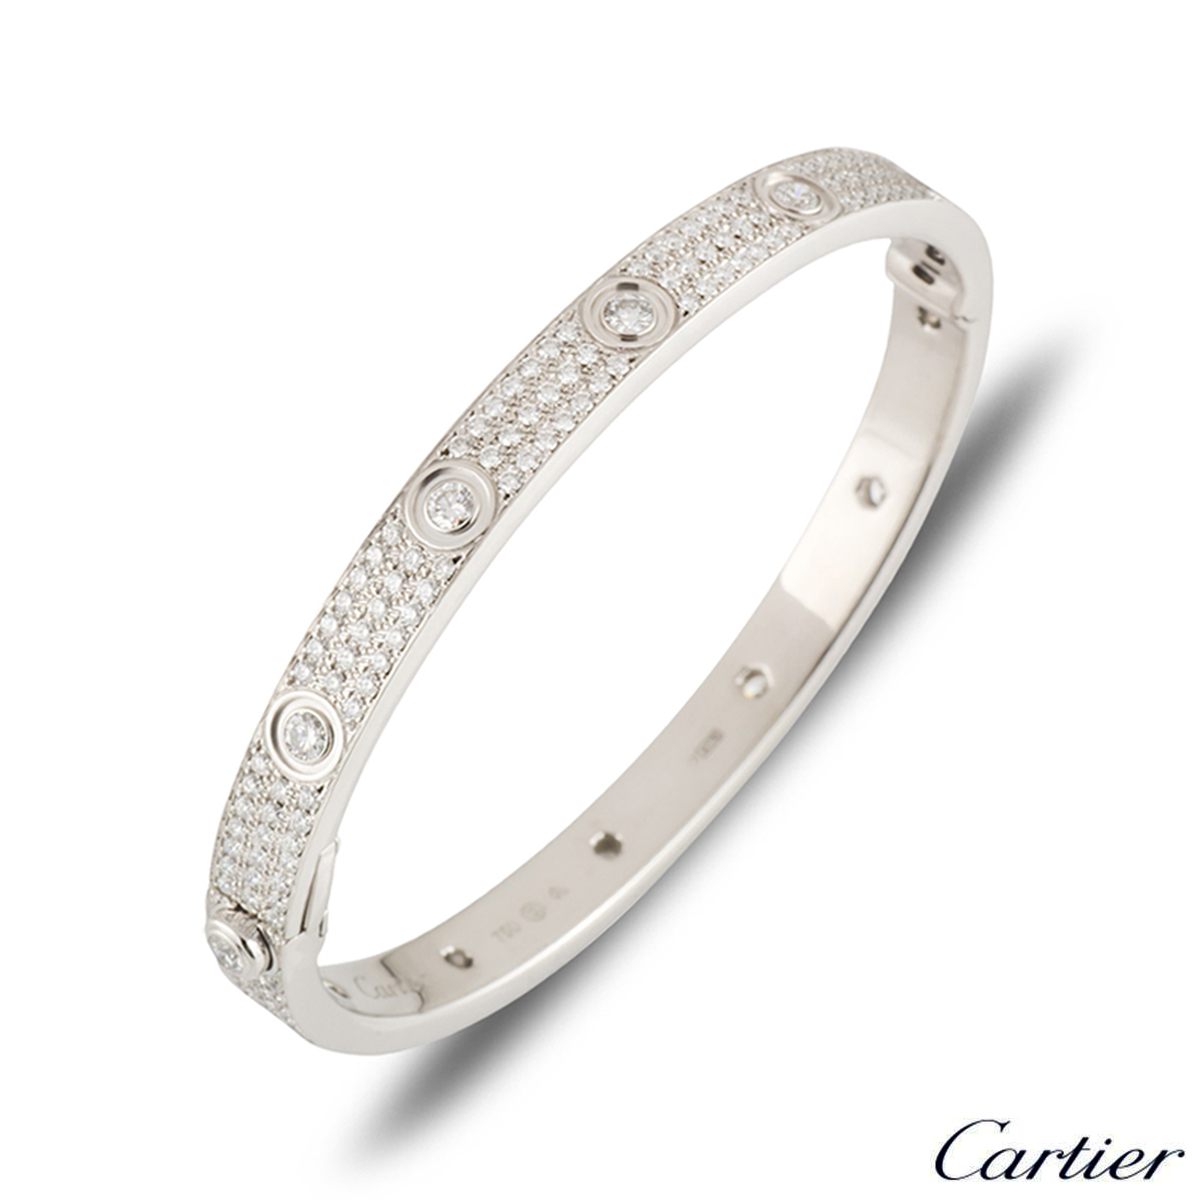 Details more than 68 cartier love bracelet platinum diamond super hot ...